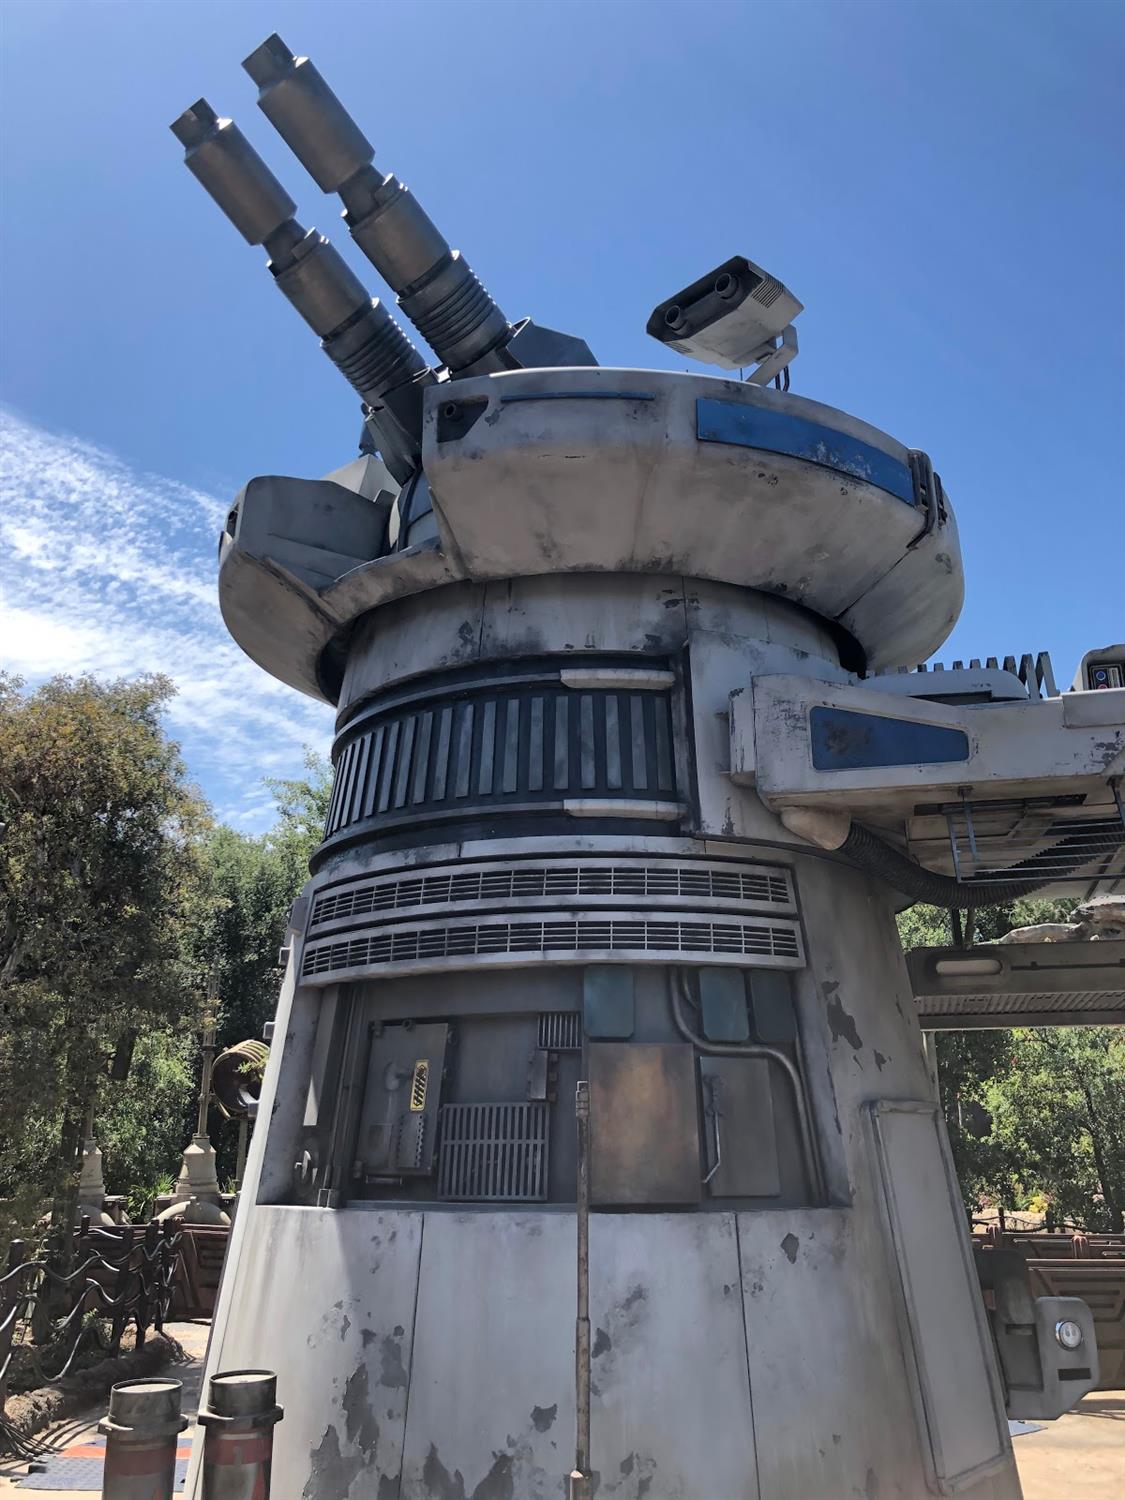 R2-D2 Now Gliding Around Star Wars: Galaxy's Edge at Disneyland